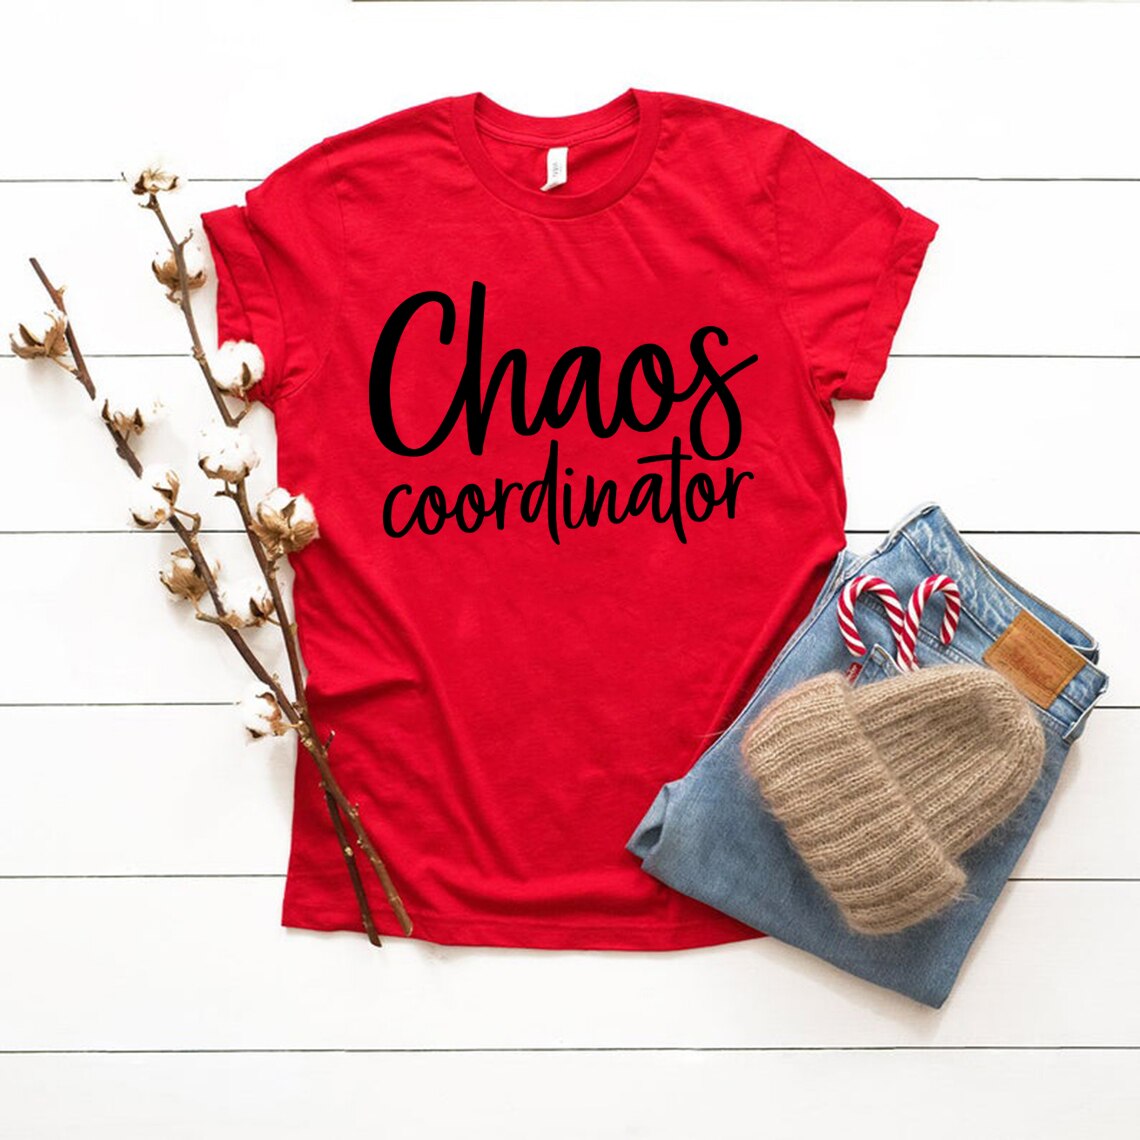 Chaos Coordinator T Shirt